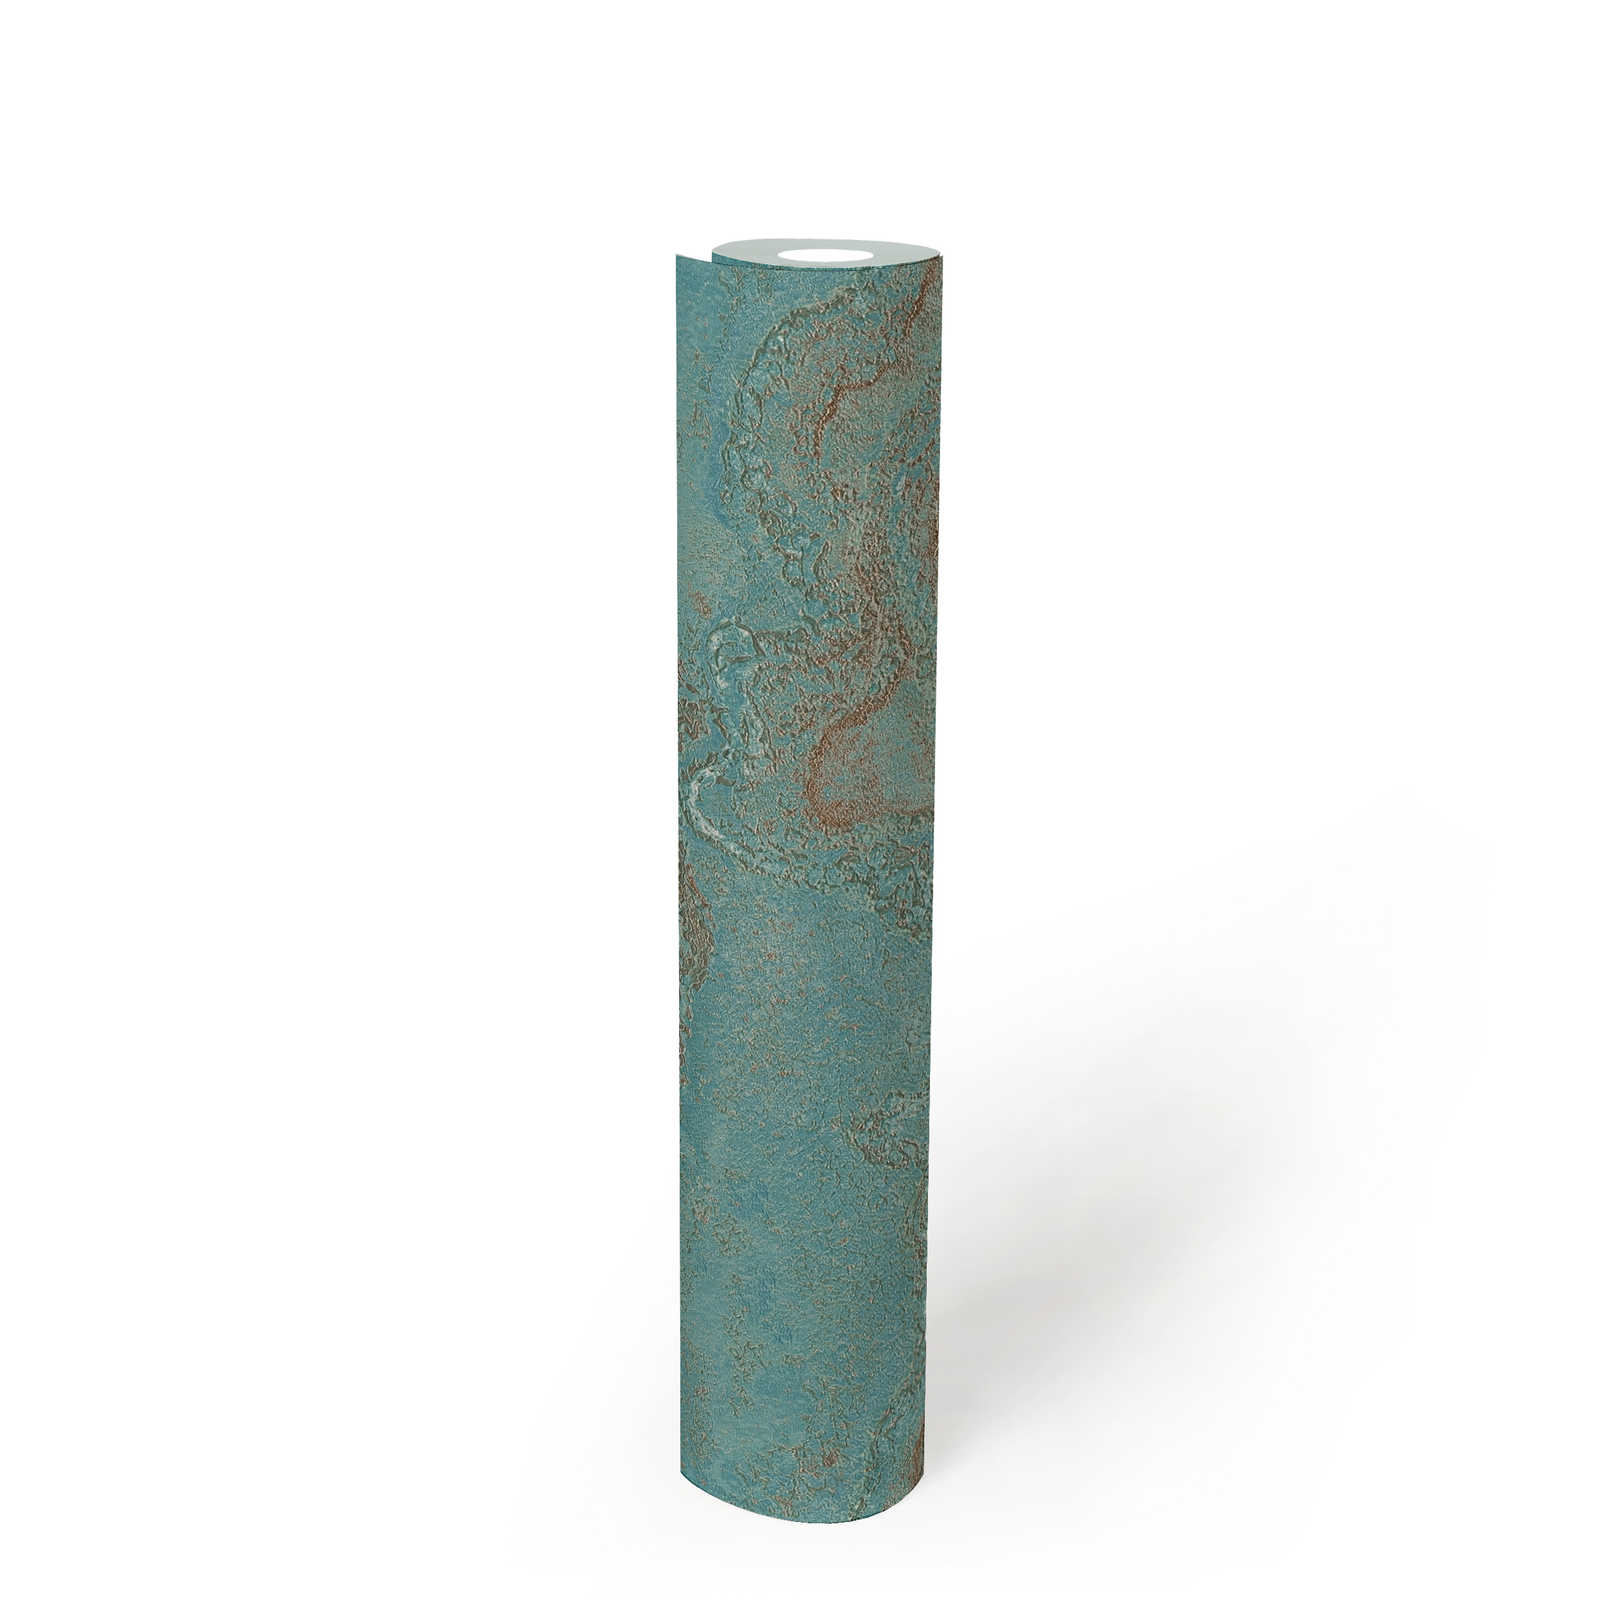             Vliestapete marmoriert mit Metallic- Effekt – Blau, Türkis, Gold
        